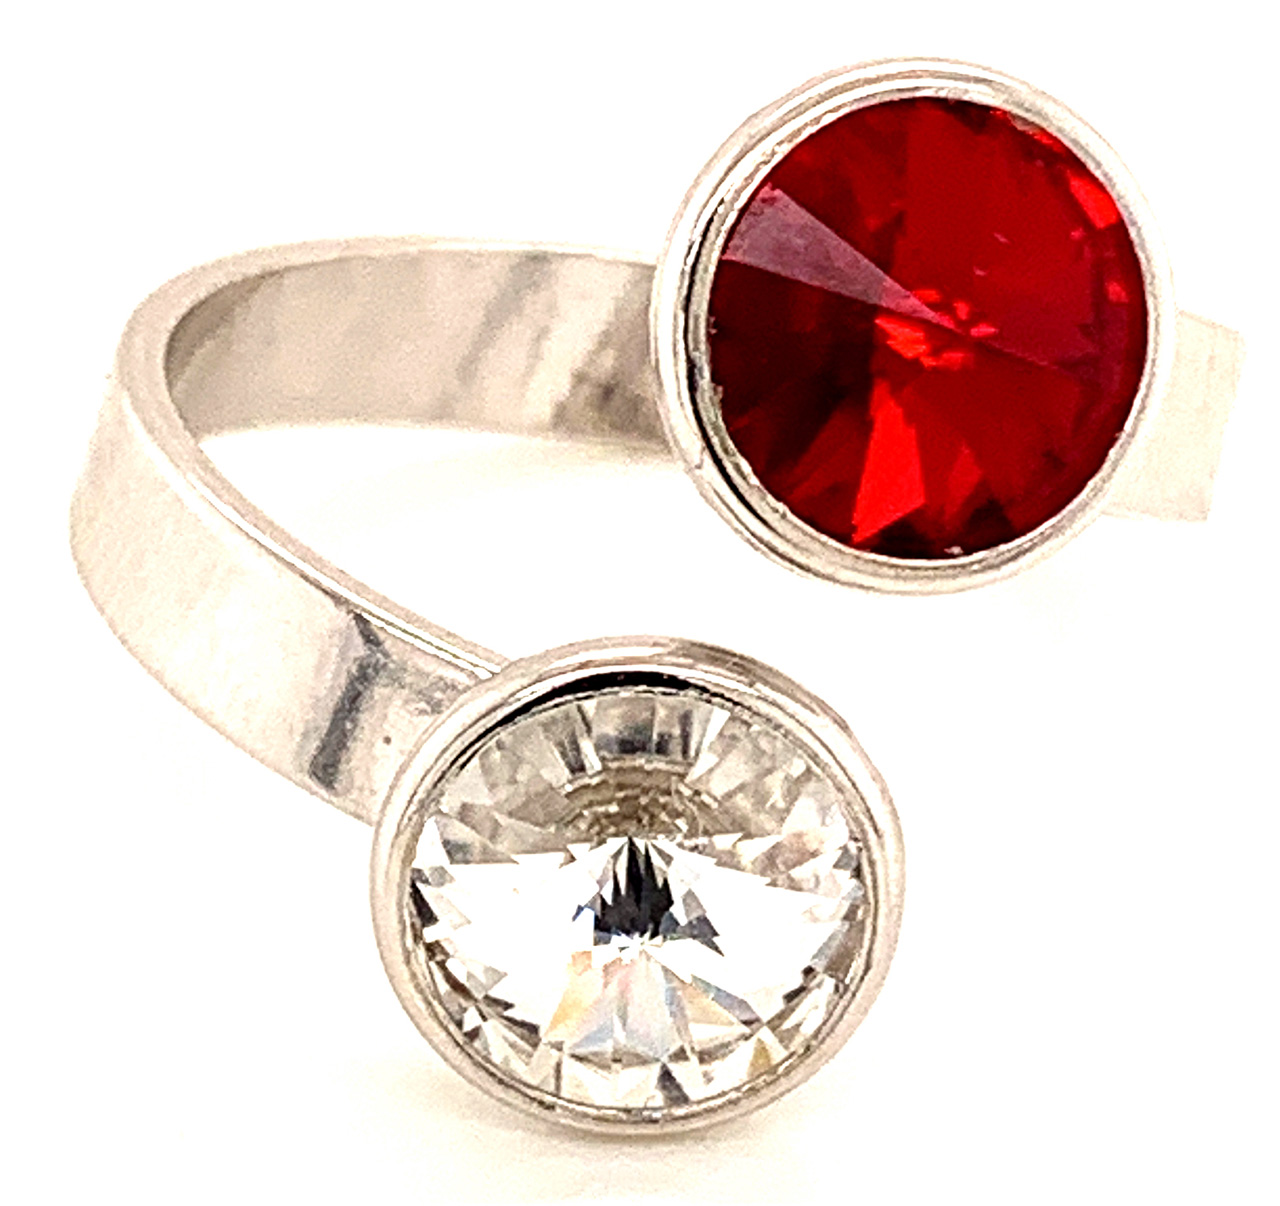 Silber Ring mit 2 Swarovski Crystal (1*Siam/1*Crystal Clear) 925 Silberfassung größe änderbar gesamt ca. 3,4 Gramm 17 ct handgearbeitet, rhodiniert, handegemacht in Italien AT0578RSC